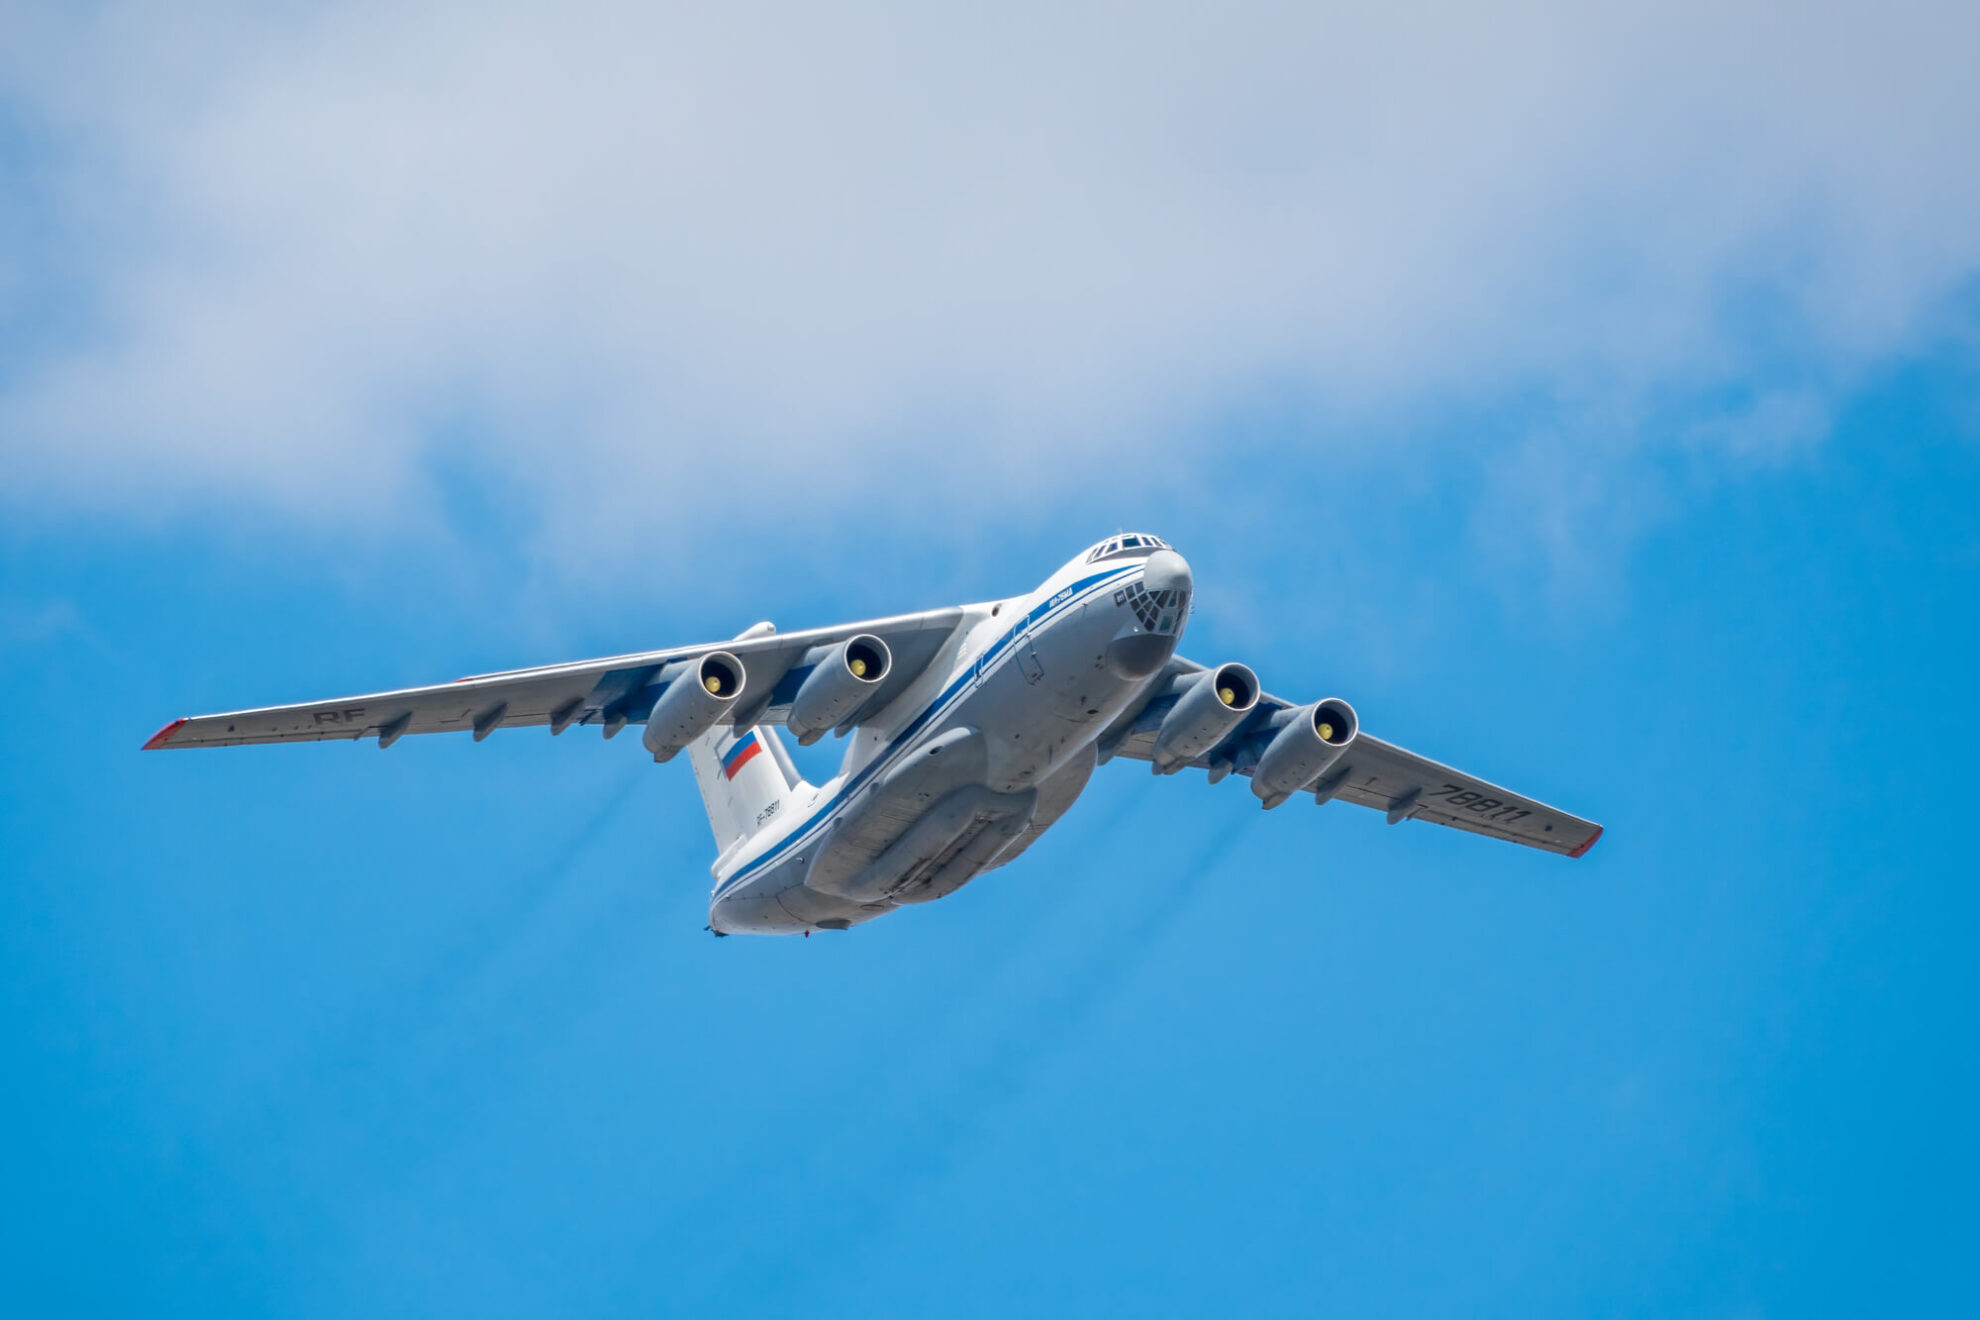 Ουκρανία: Οι υπηρεσίες πληροφορίων δεν έχουν «αξιόπιστες πληροφορίες» για τους επιβάτες του ρωσικού αεροσκάφους που συνετρίβη στο Μπέλγκοροντ